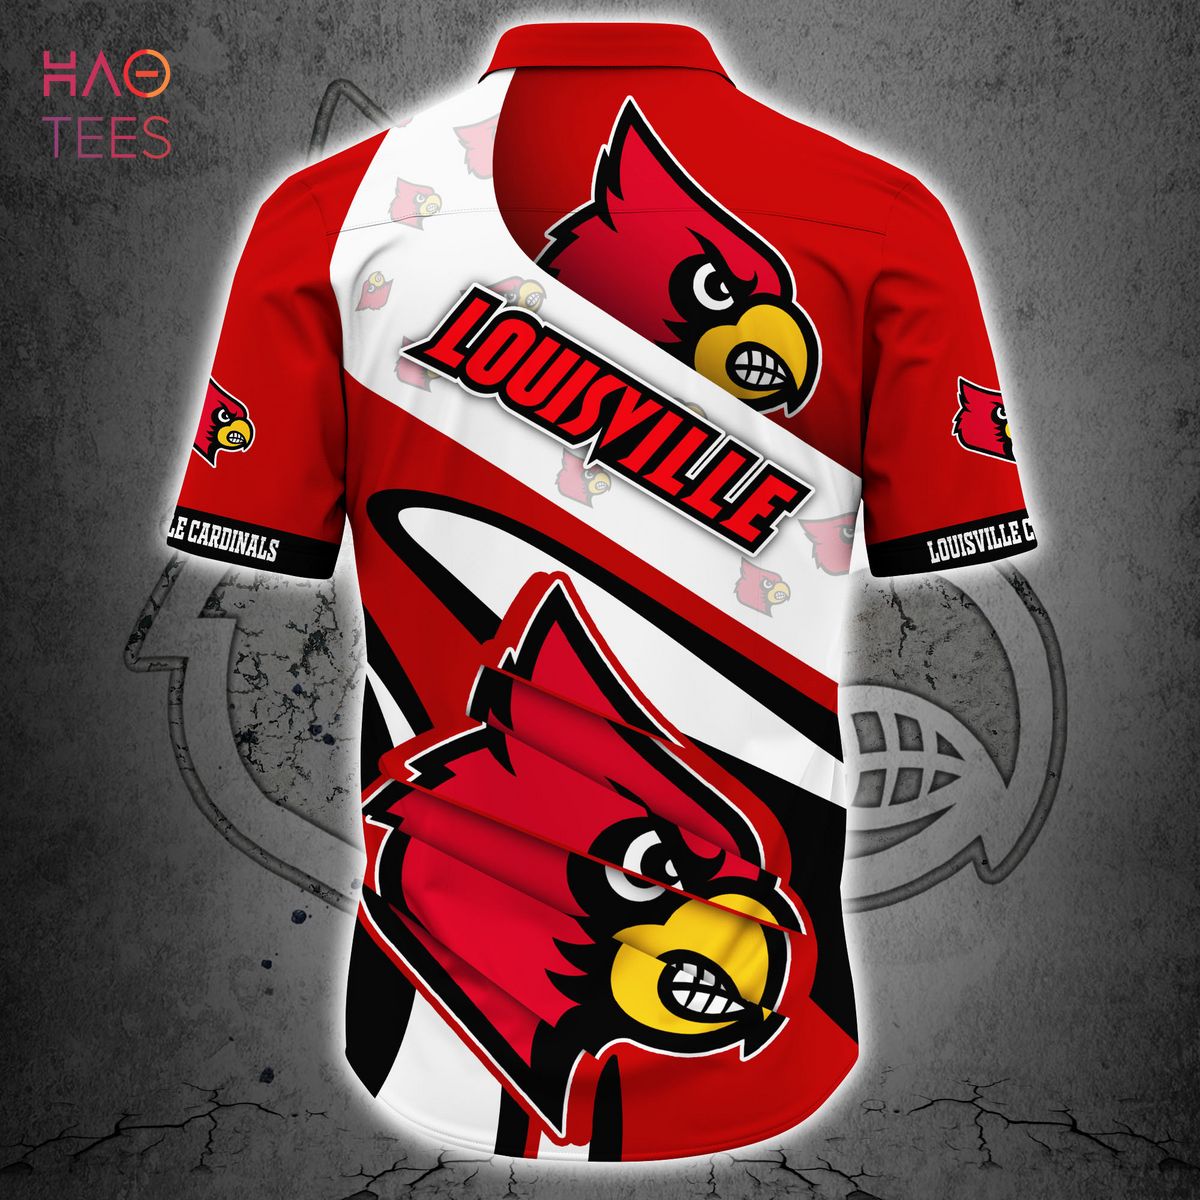 Louisville Cardinals Hot Trending 3D T-Shirt For Fans